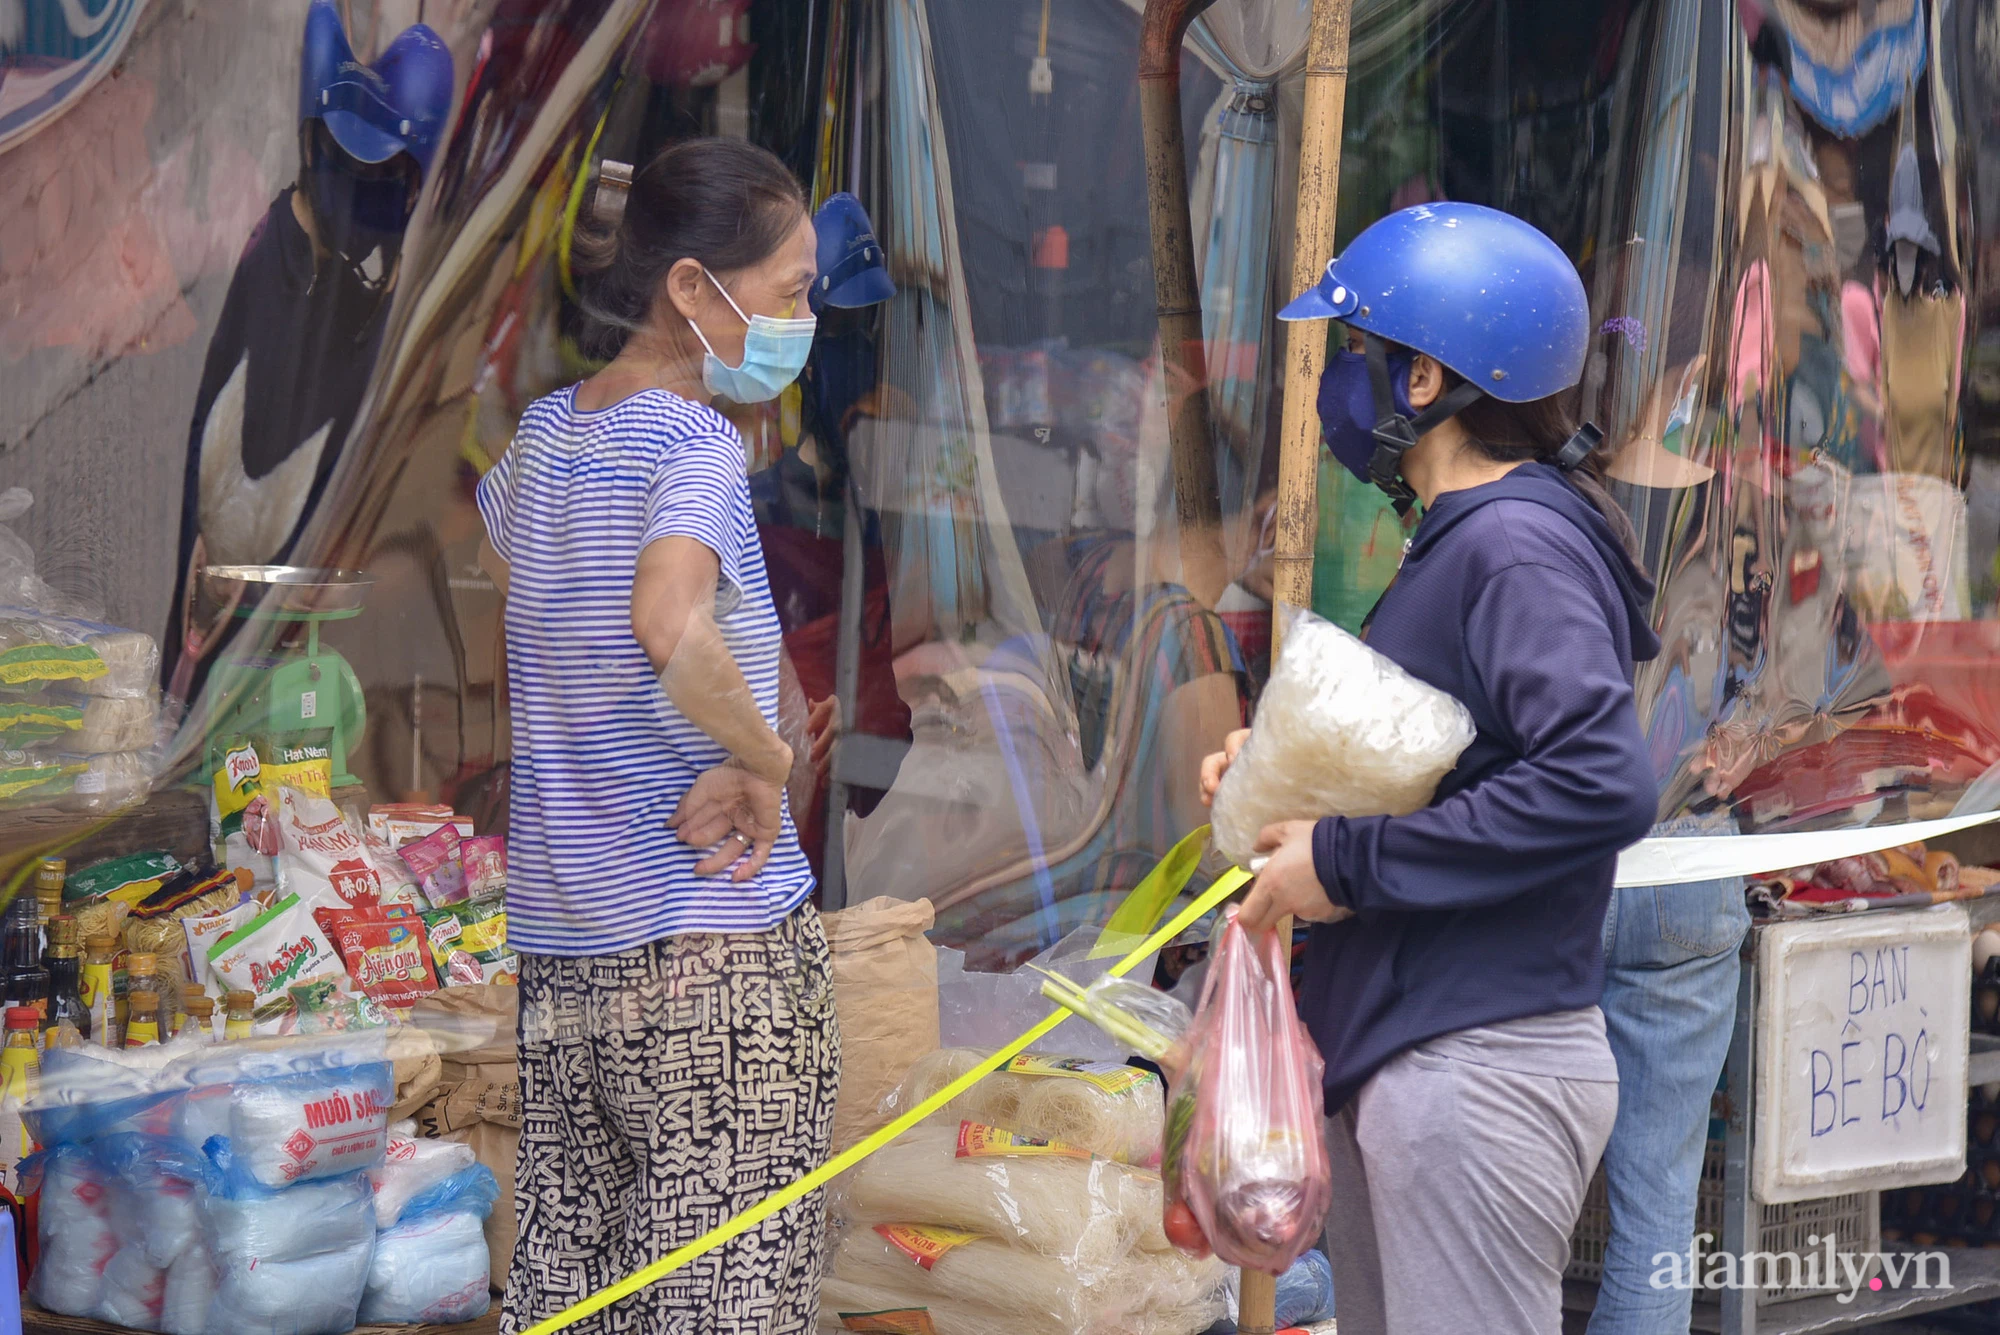 Ấn tượng với khu chợ dân sinh đầu tiên ở Hà Nội quây tấm nilon phòng dịch COVID-19, tiểu thương chia ca đứng bán theo ngày chẵn, lẻ - Ảnh 8.